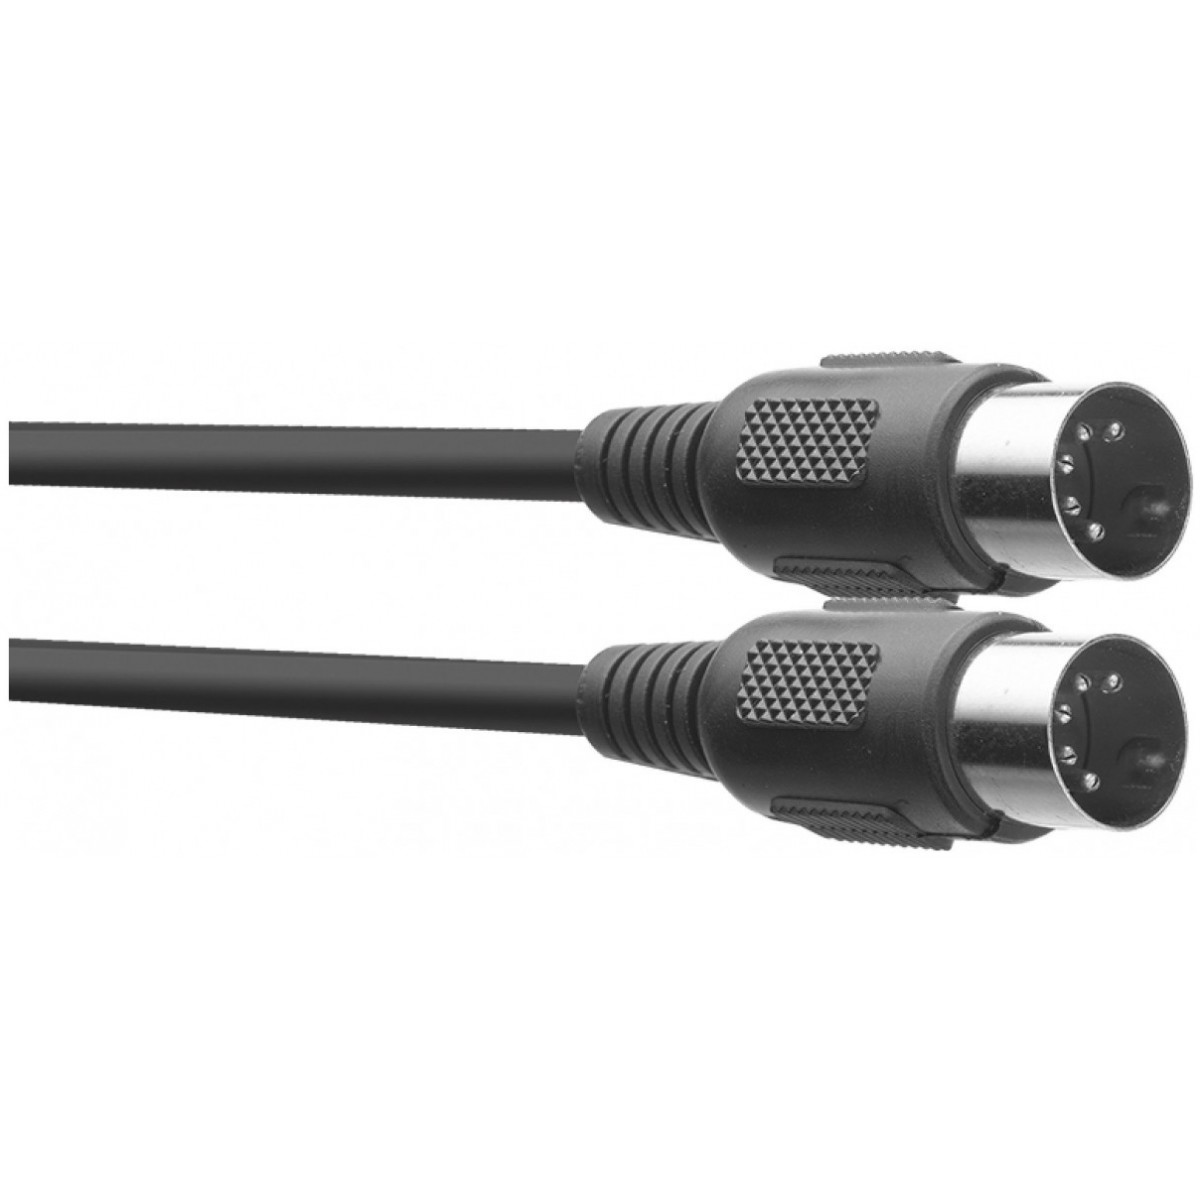 MIDI kabel, DIN zástrčka/DIN zástrčka, 3 m